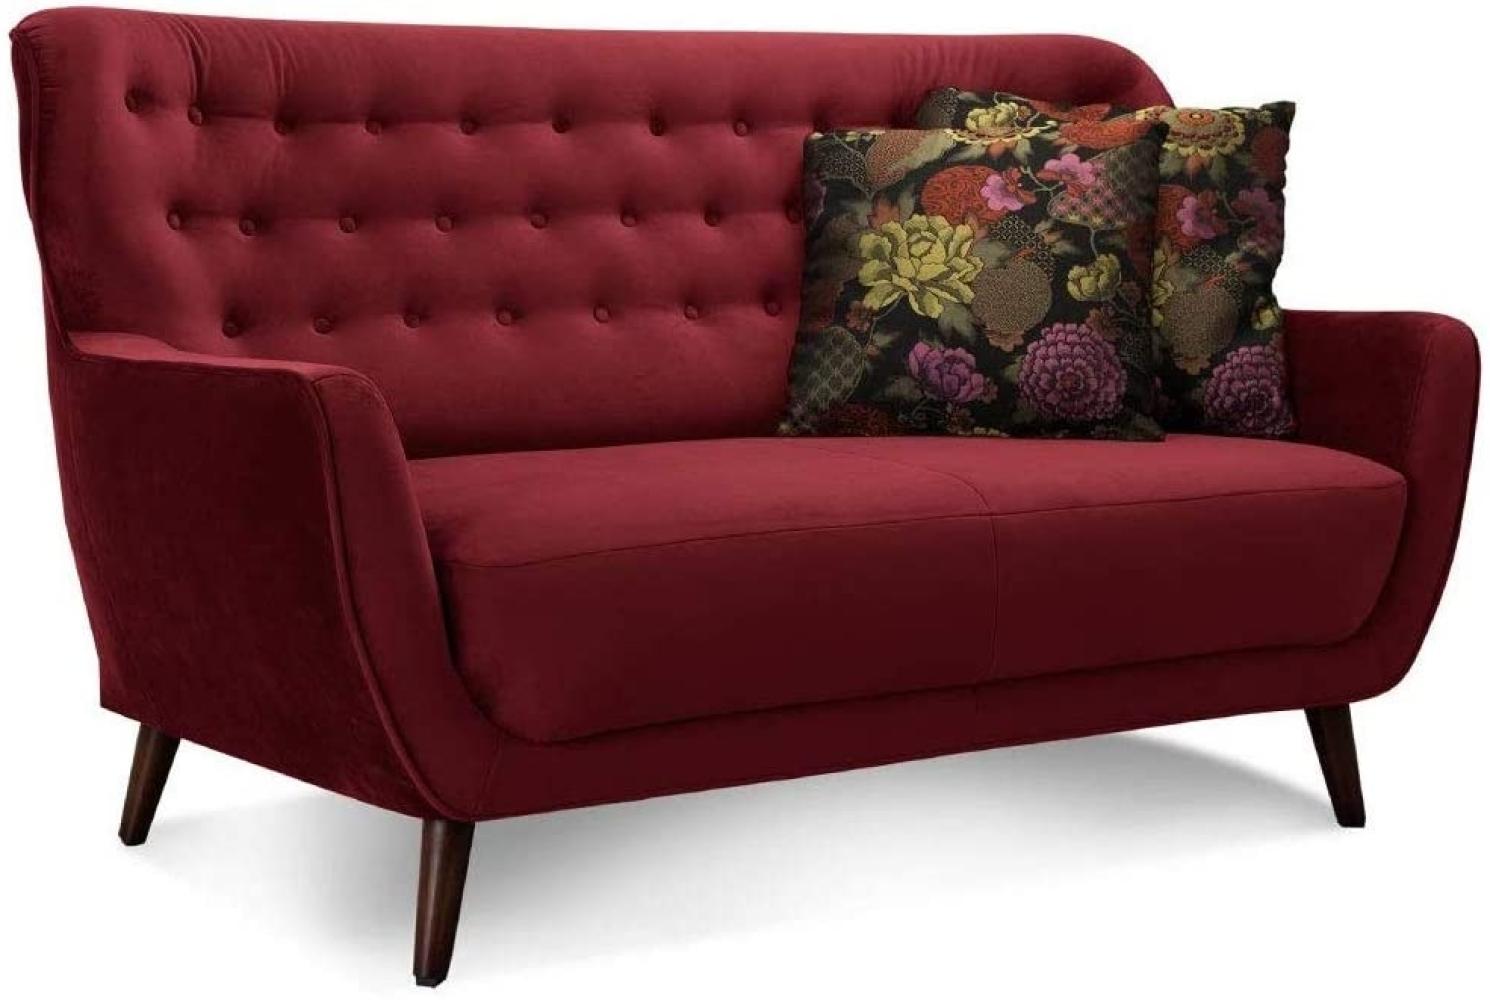 CAVADORE 2-Sitzer-Sofa Abby / Retro-Couch mit Samtbezug und Knopfheftung / 153 x 89 x 88 / Samtoptik, rot Bild 1